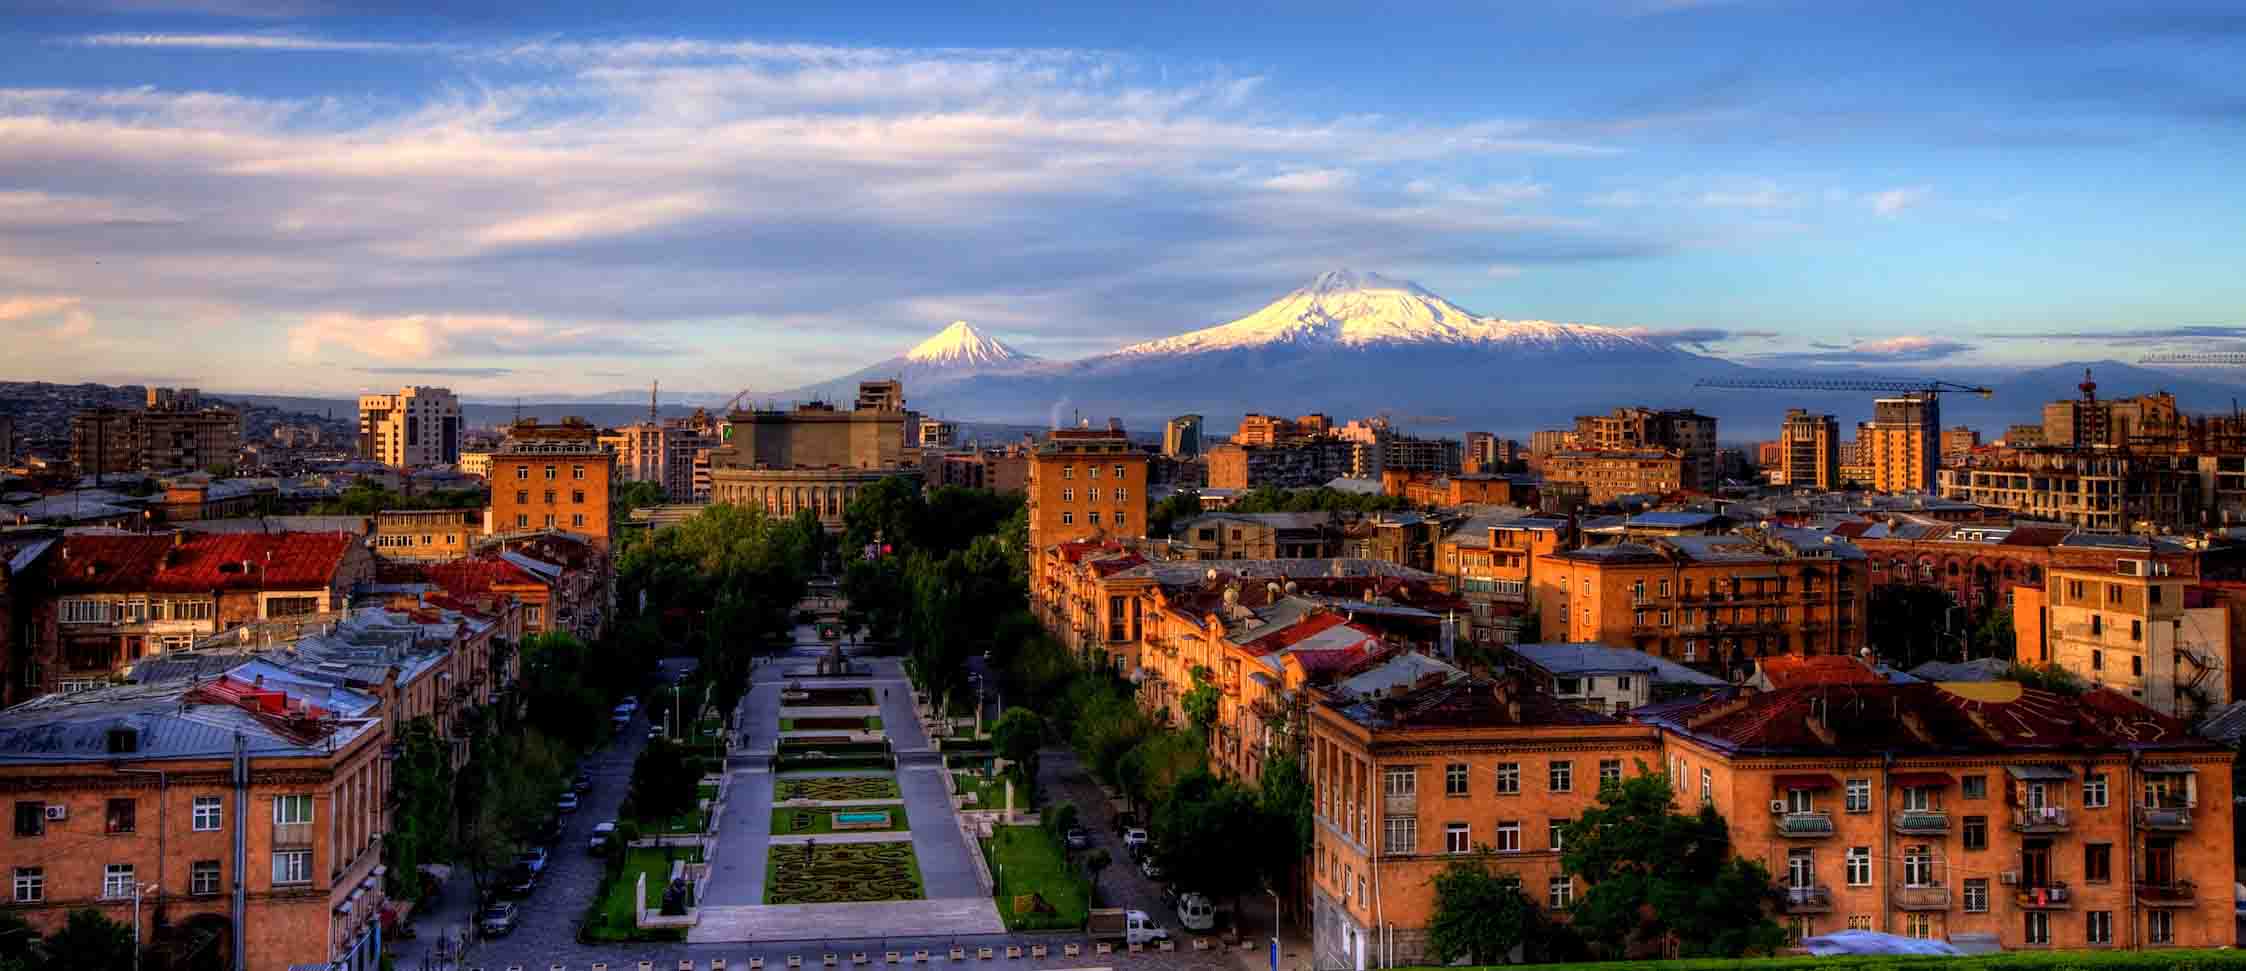 484 ամենամատչելի քաղաքաների ցանկում Երևանը 61-րդն է